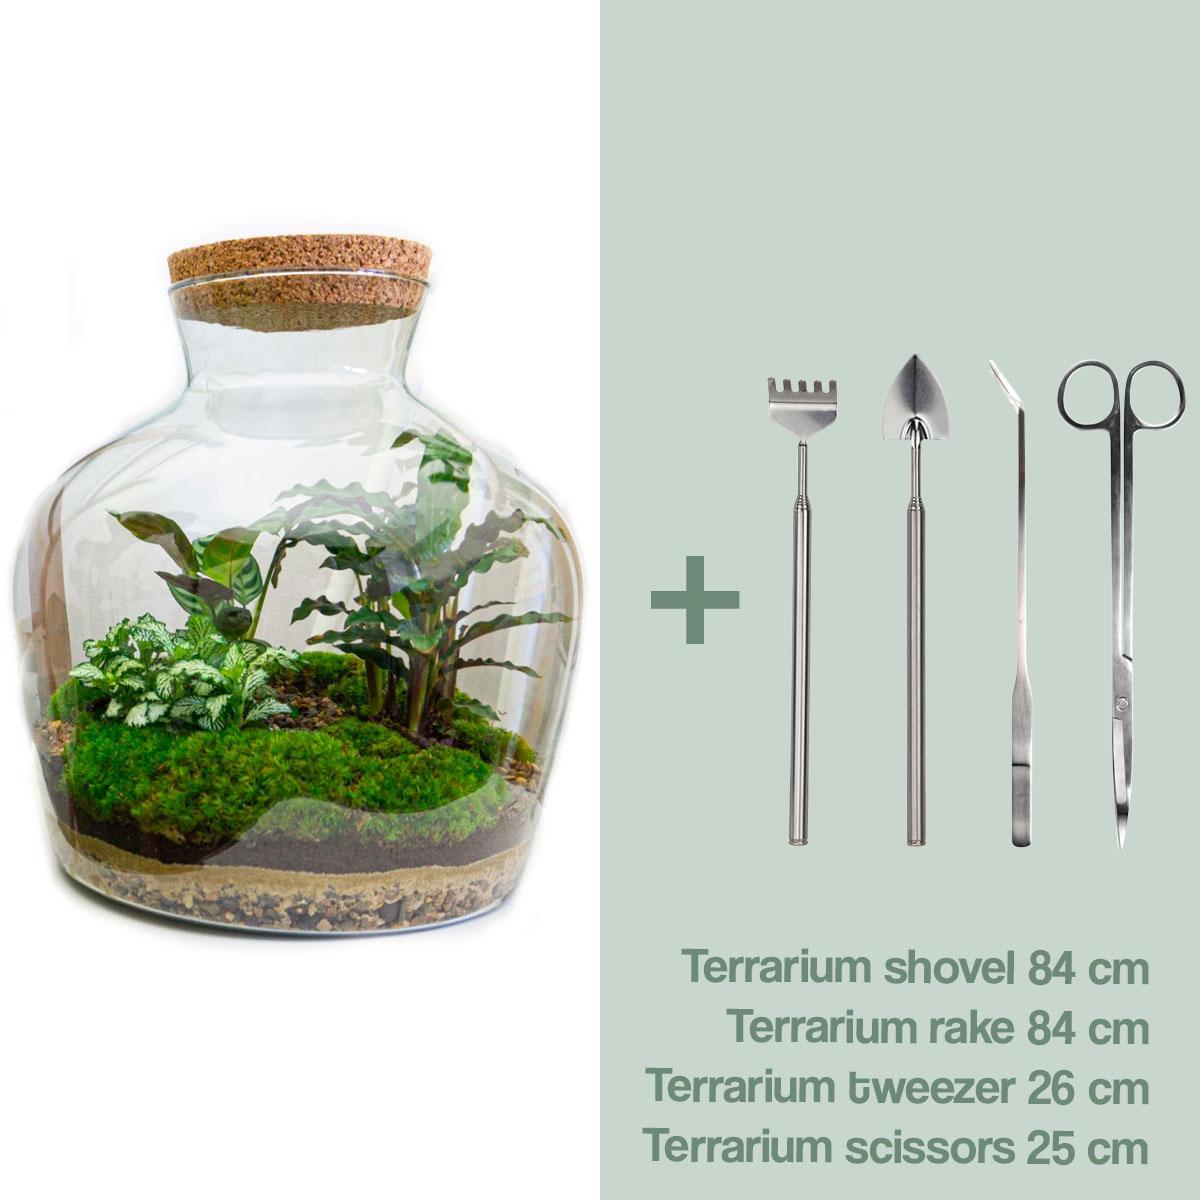 DIY terrarium -  Fat Joe - ↑ 30 cm + Rake + Shovel + Tweezer + Scissors